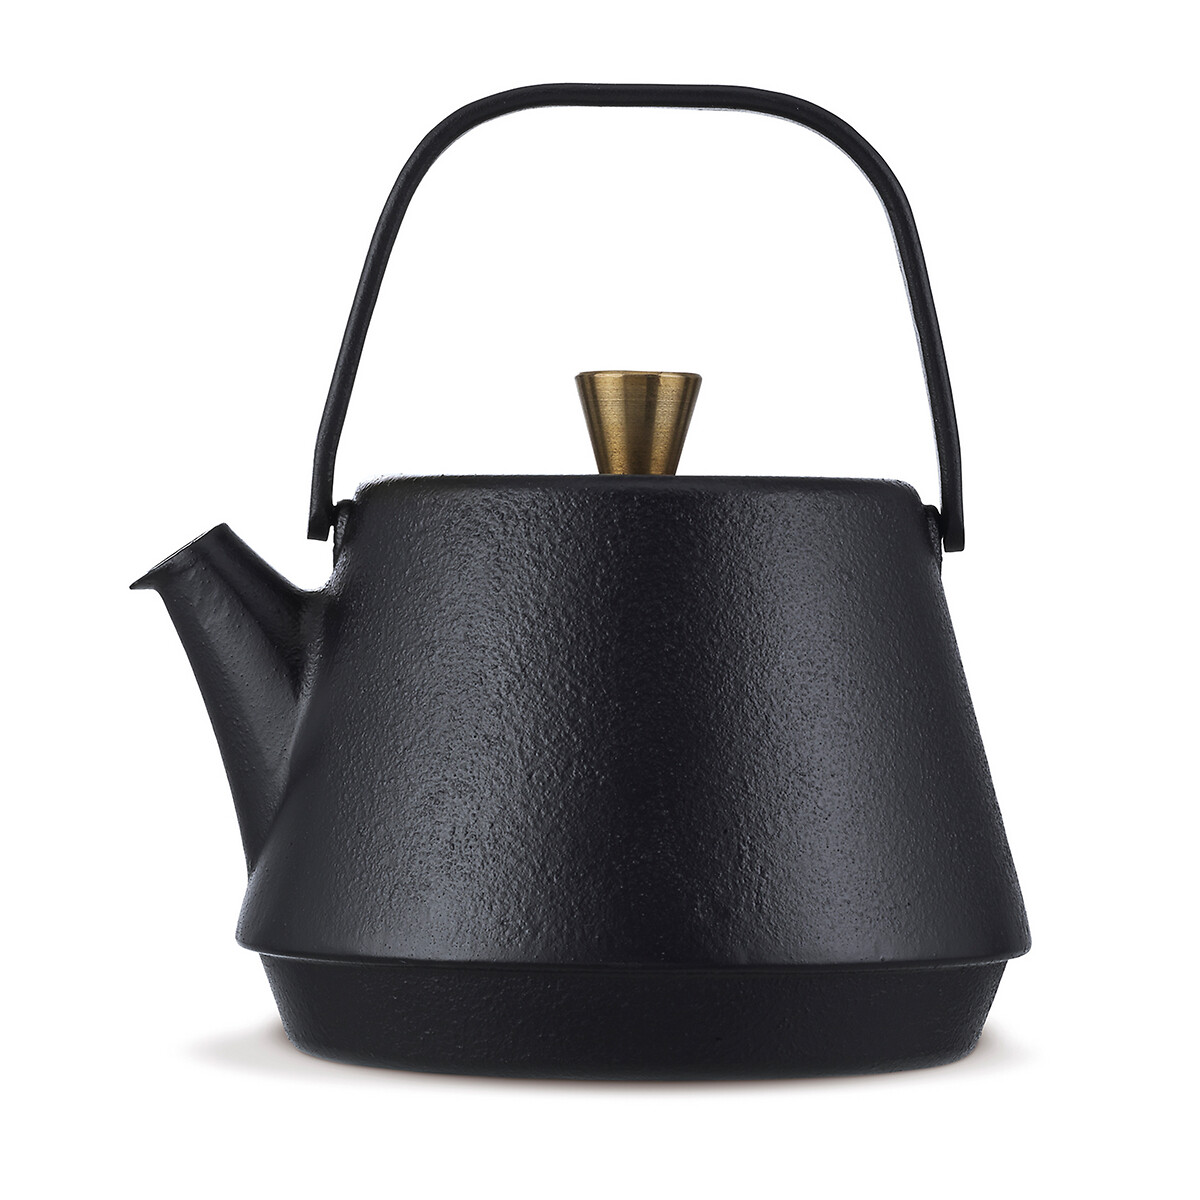 Gamme Saga 16409324 Cast Iron Teapot